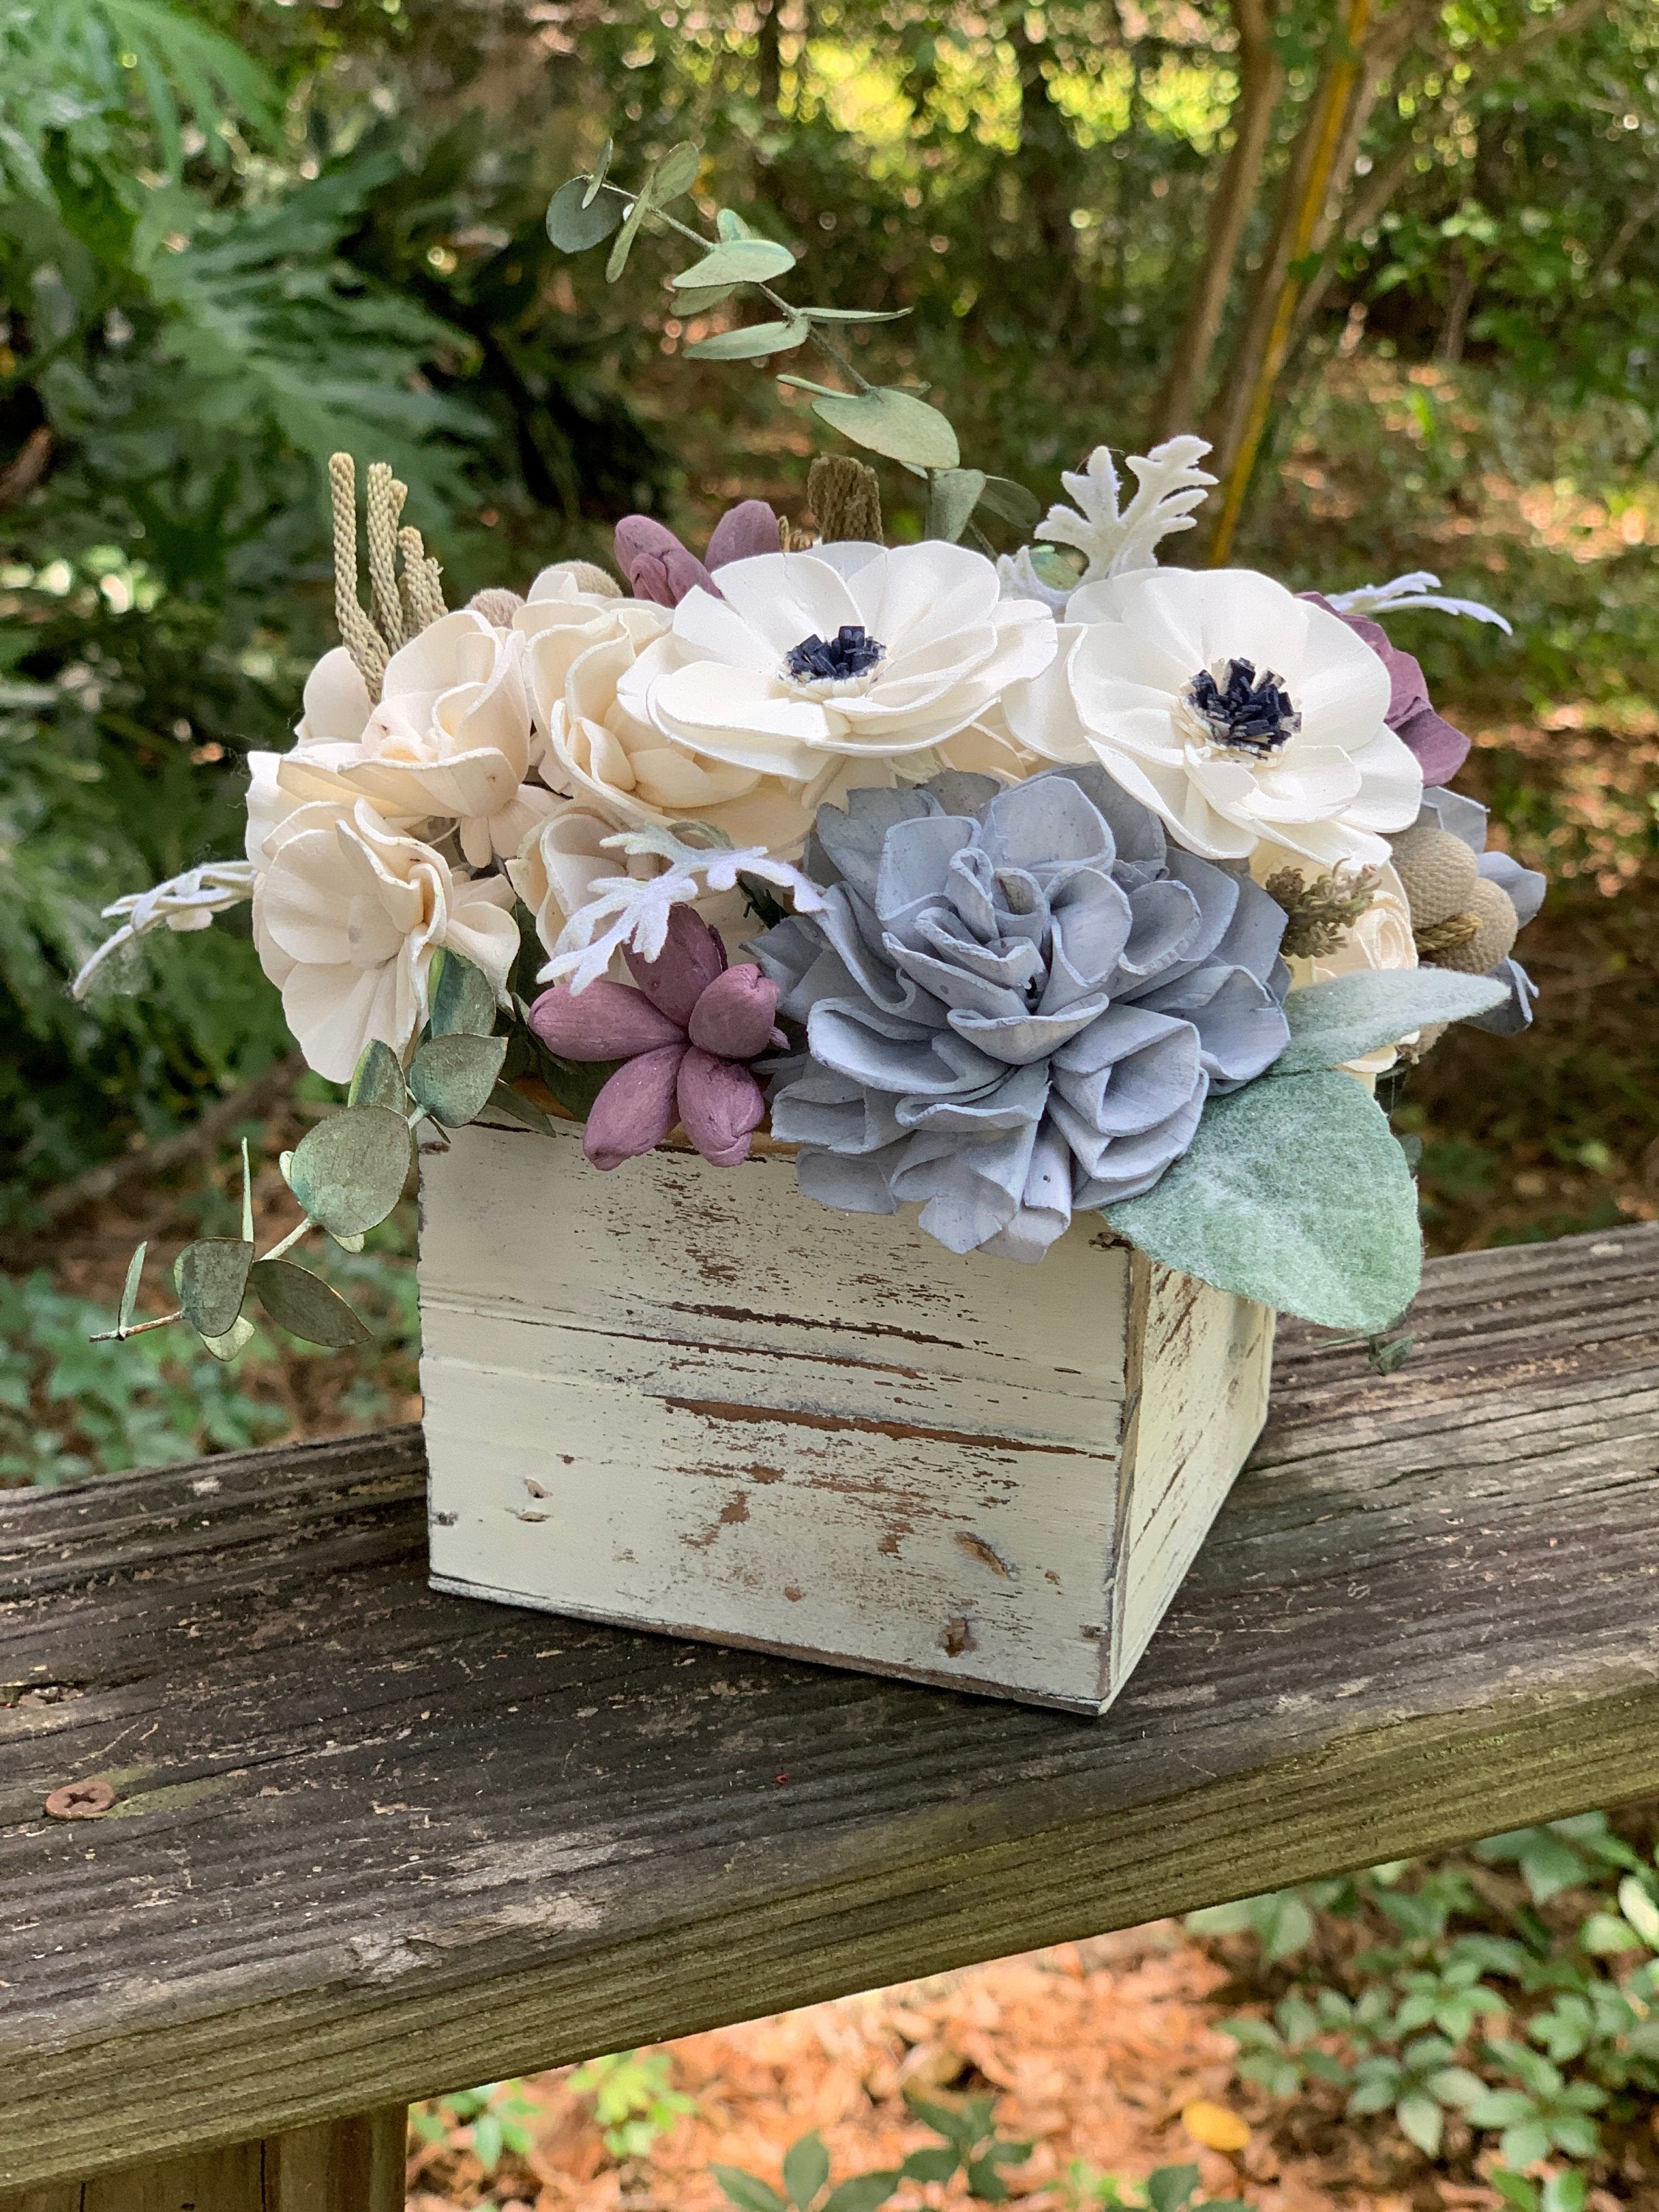 Flower Centerpiece in Wood Box